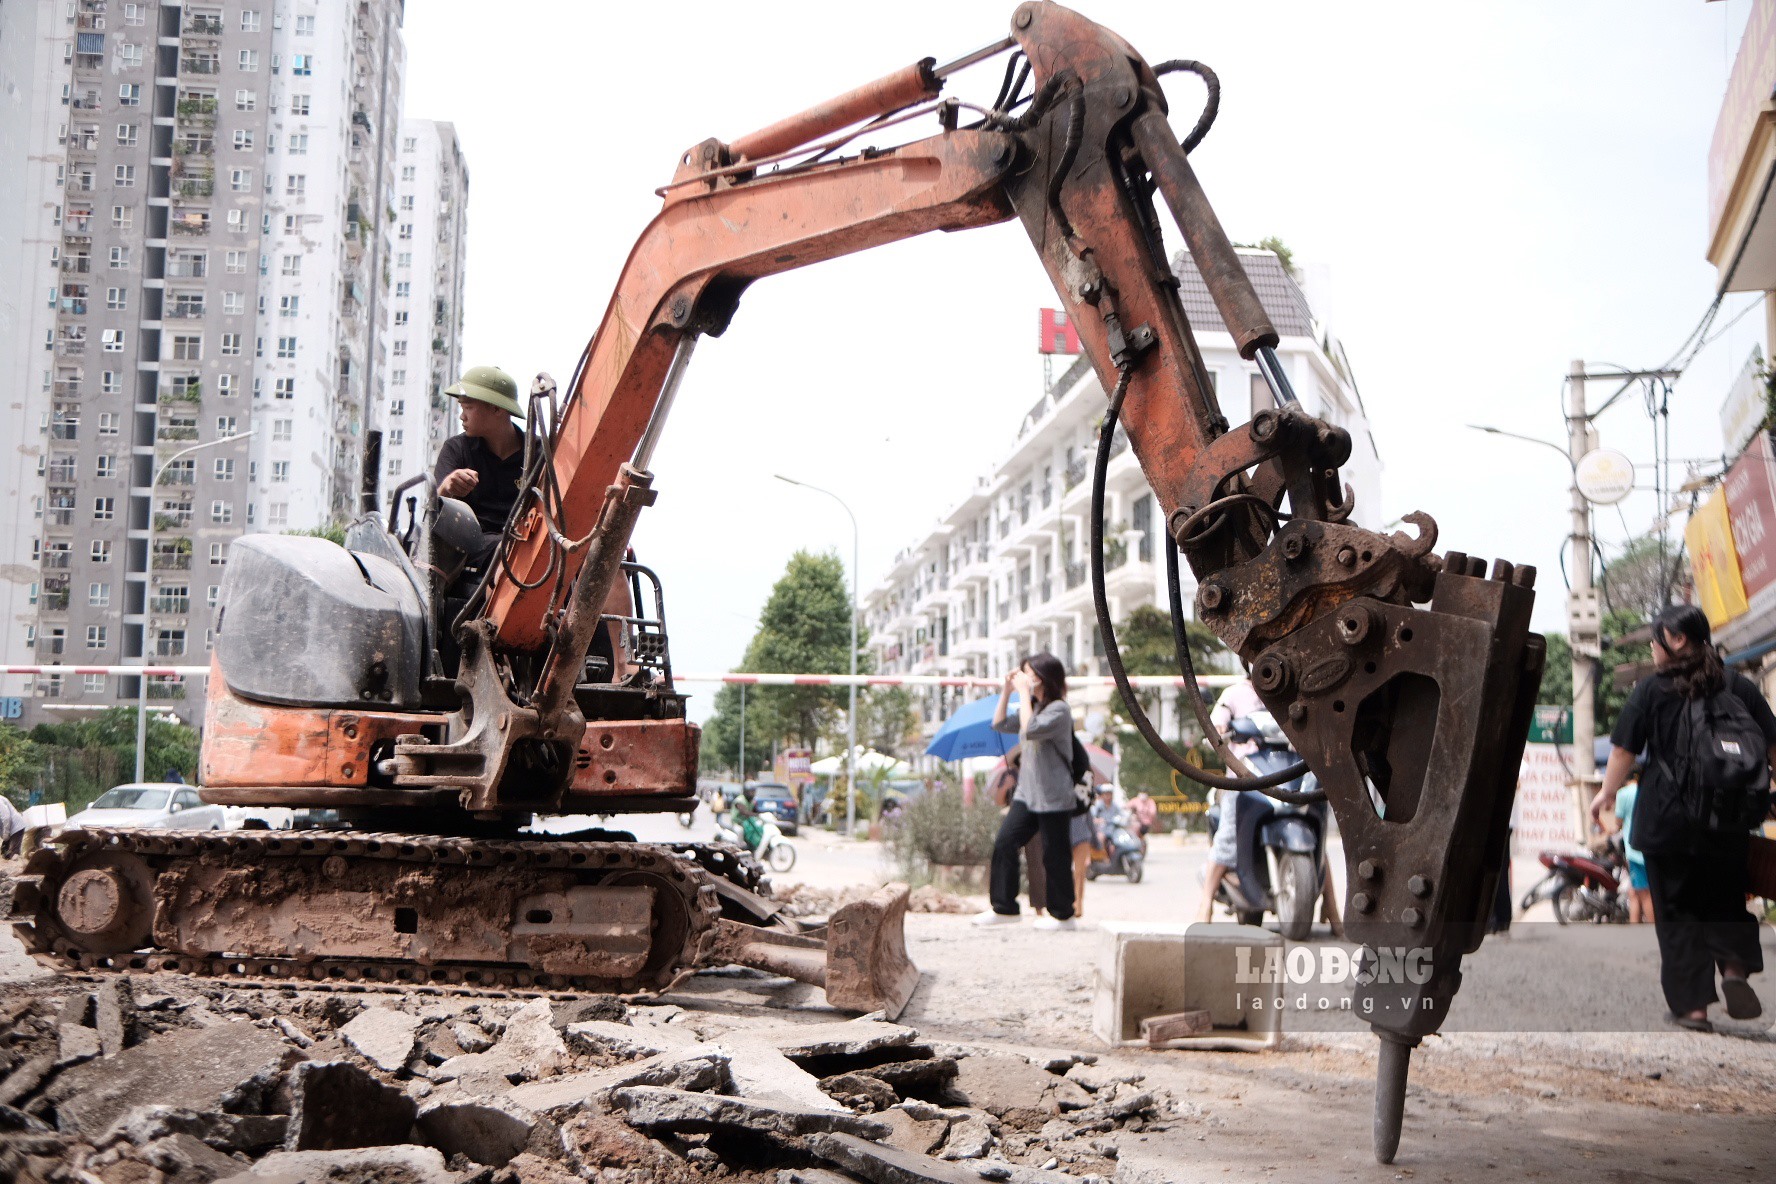 UBND Quận Hoàng Mai đã có thông báo về việc thi công, sửa chữa ngõ 282 Kim Giang, kéo dài từ ngách 282/1 đến đền Vua Lê do Công ty cổ phần xây dựng đầu tư VINA2 tiến hành sửa chữa, bắt đầu từ 17.8.2022.